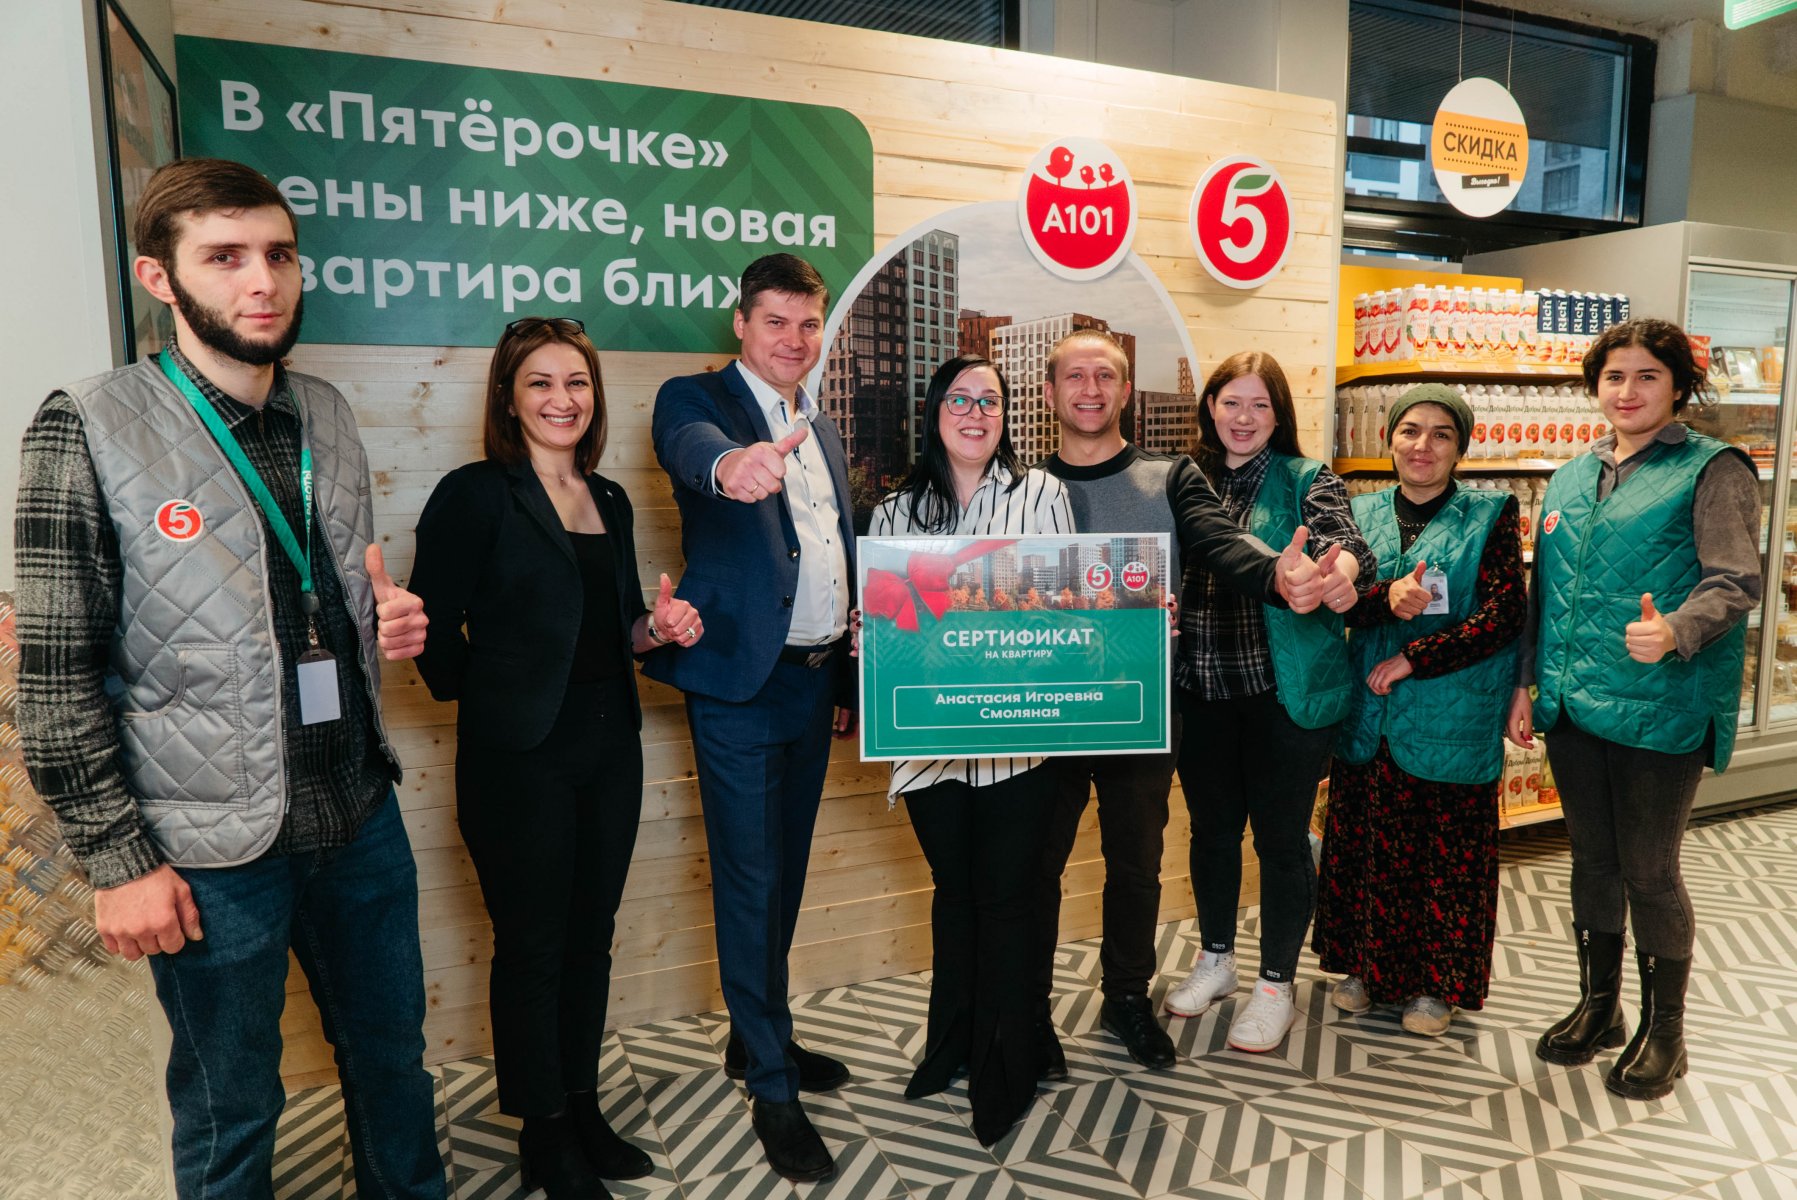 Девушка из Рязани выиграла квартиру в Москве, участвуя в акции «Пятерочки»